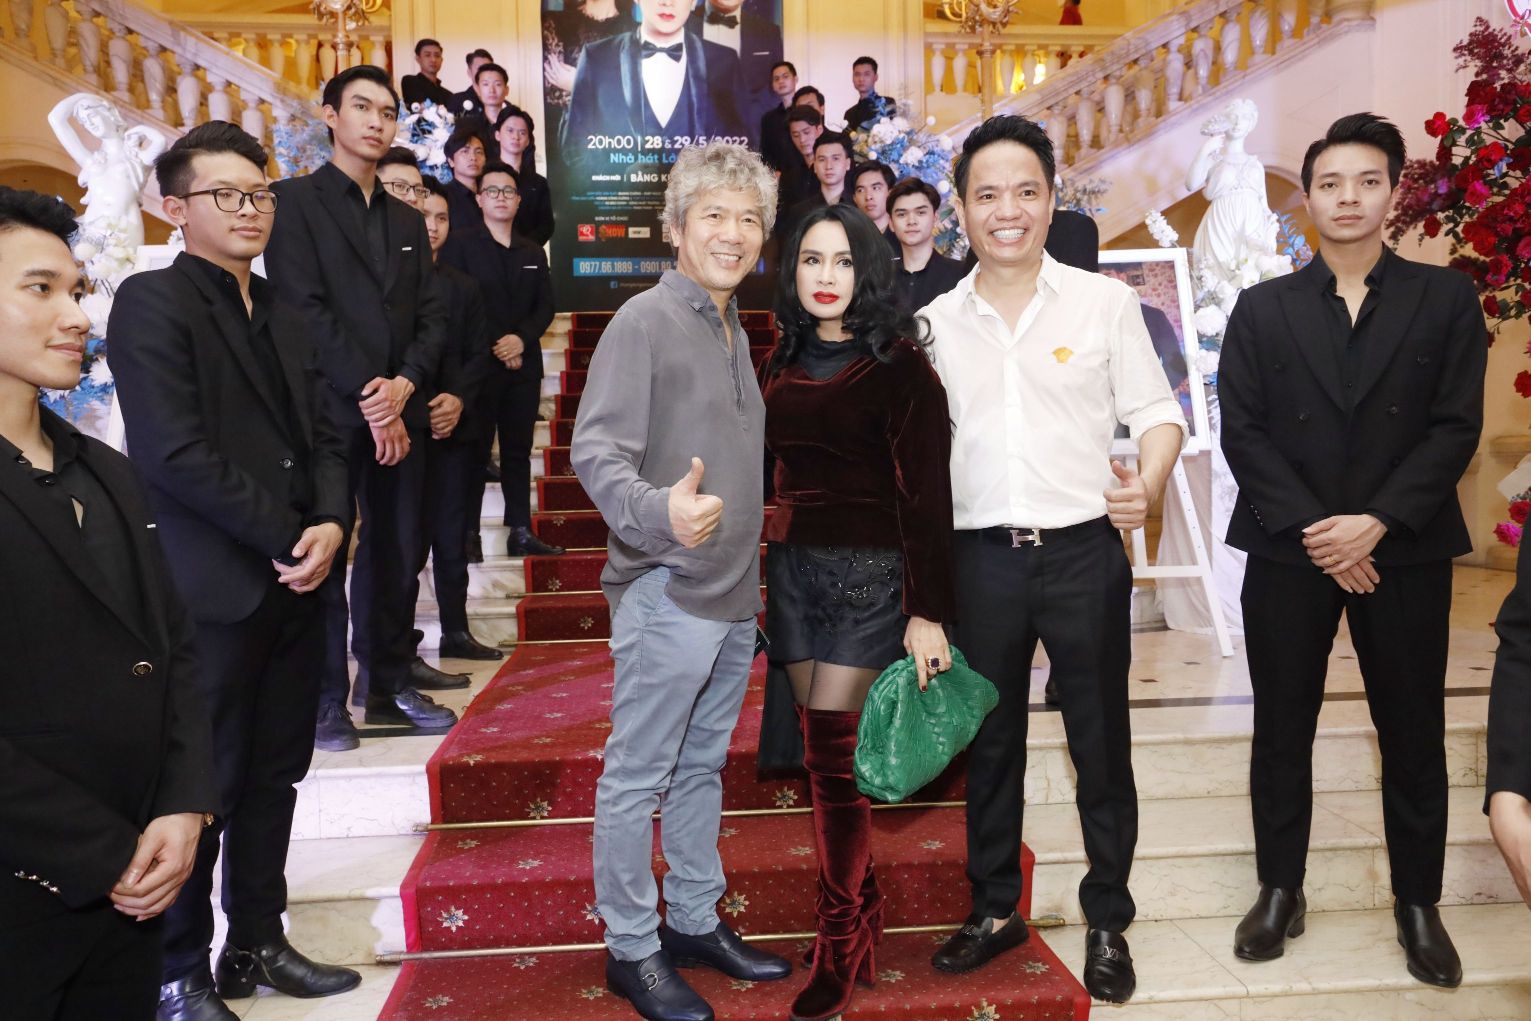 quang ha 1 Diva Thanh Lam và bạn trai bác sĩ đến chúc mừng liveshow Quang Hà